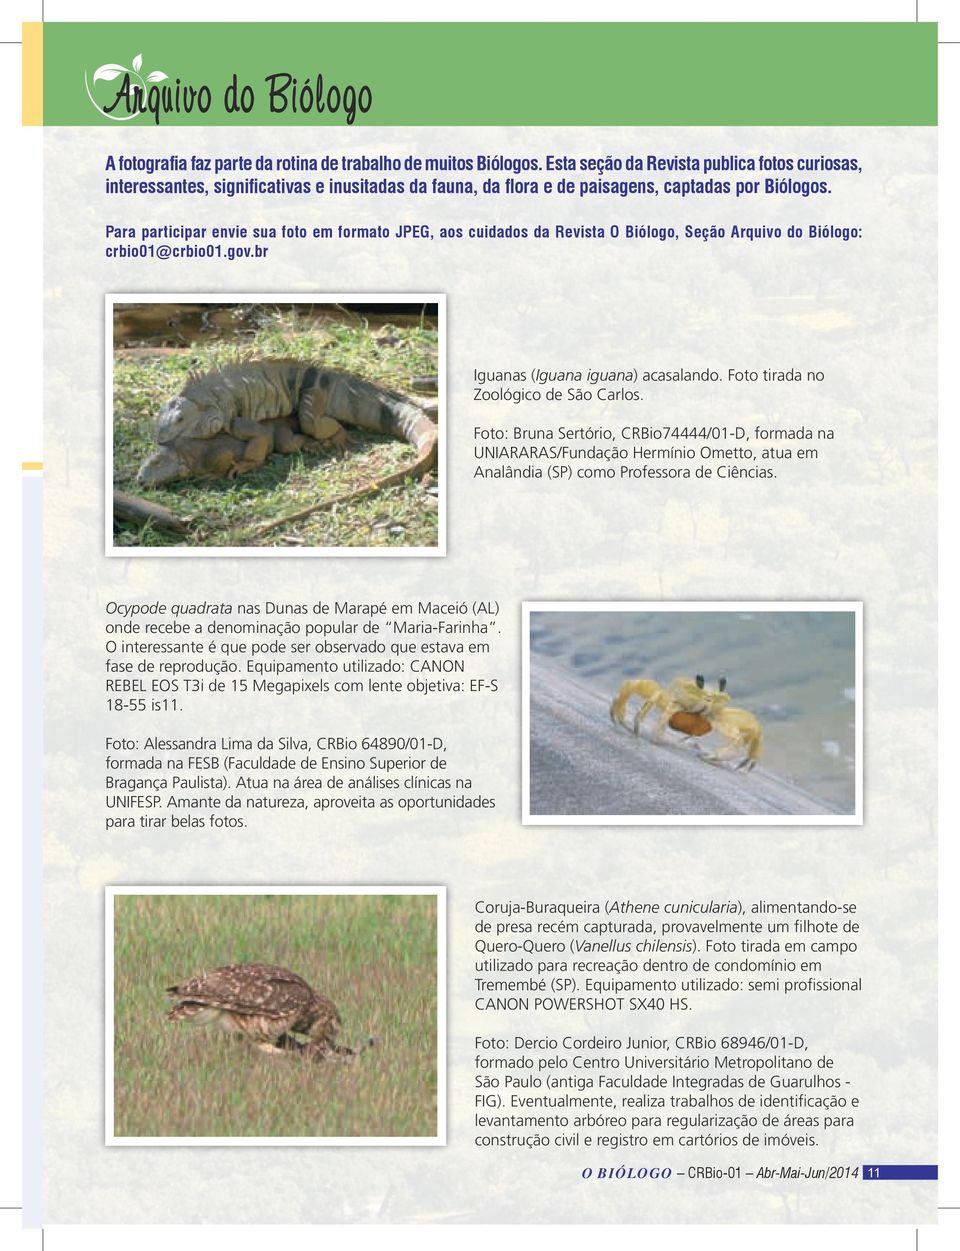 Para participar envie sua foto em formato JPEG, aos cuidados da Revista O Biólogo, Seção Arquivo do Biólogo: crbio01@crbio01.gov.br Iguanas (Iguana iguana) acasalando.